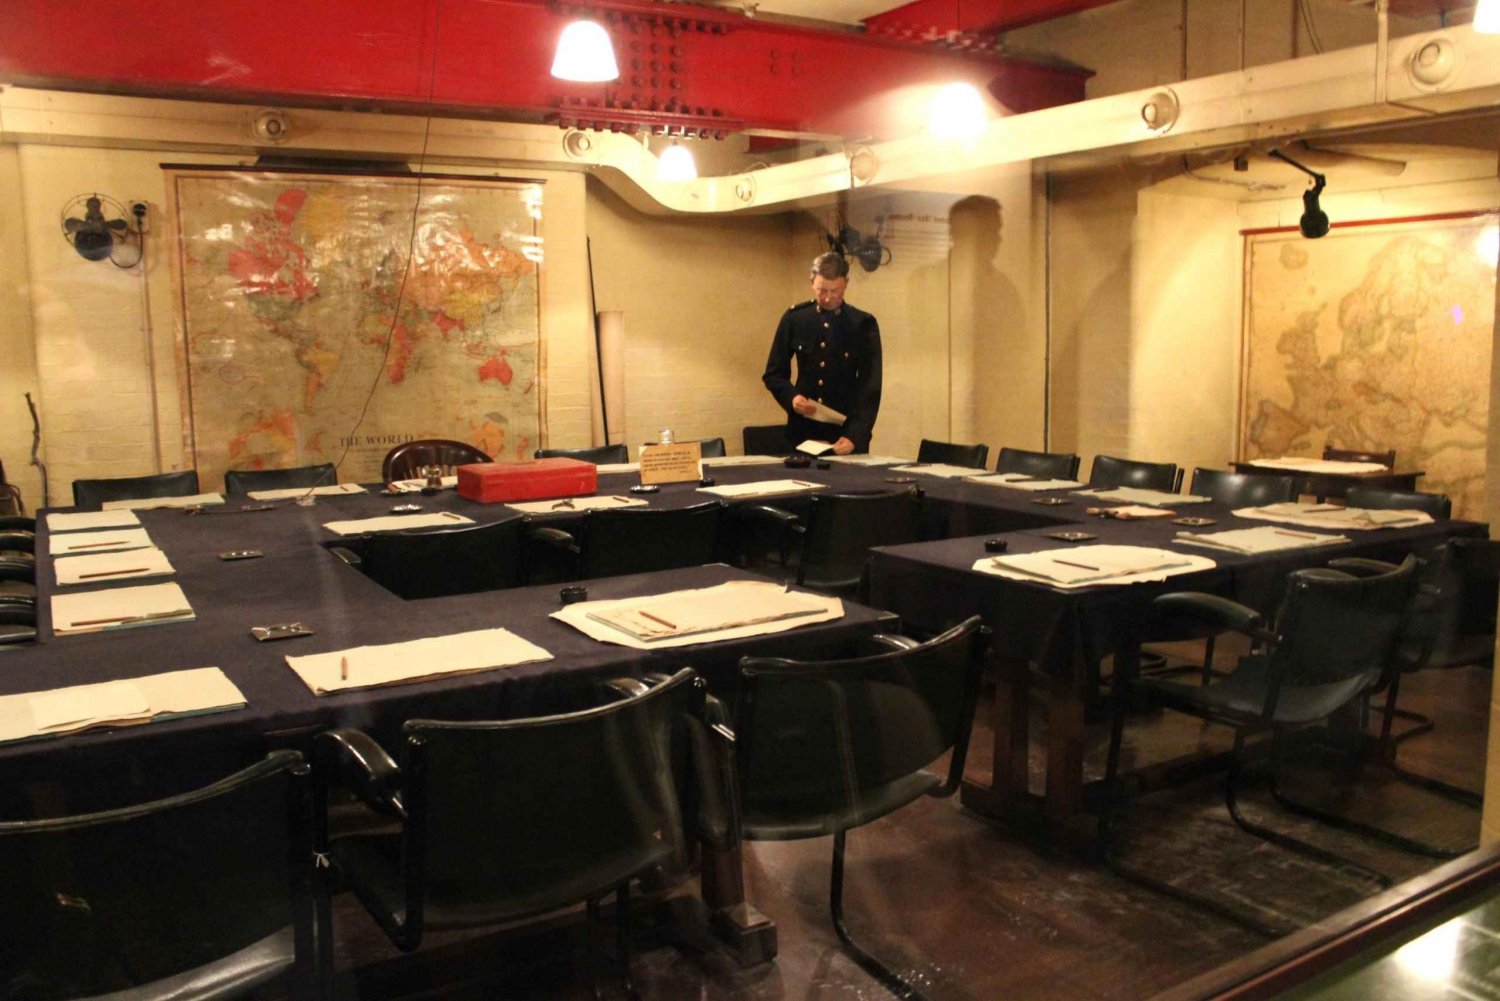 Londres: 30 Lugares de Interés y Visita a las Salas de Guerra de Churchill